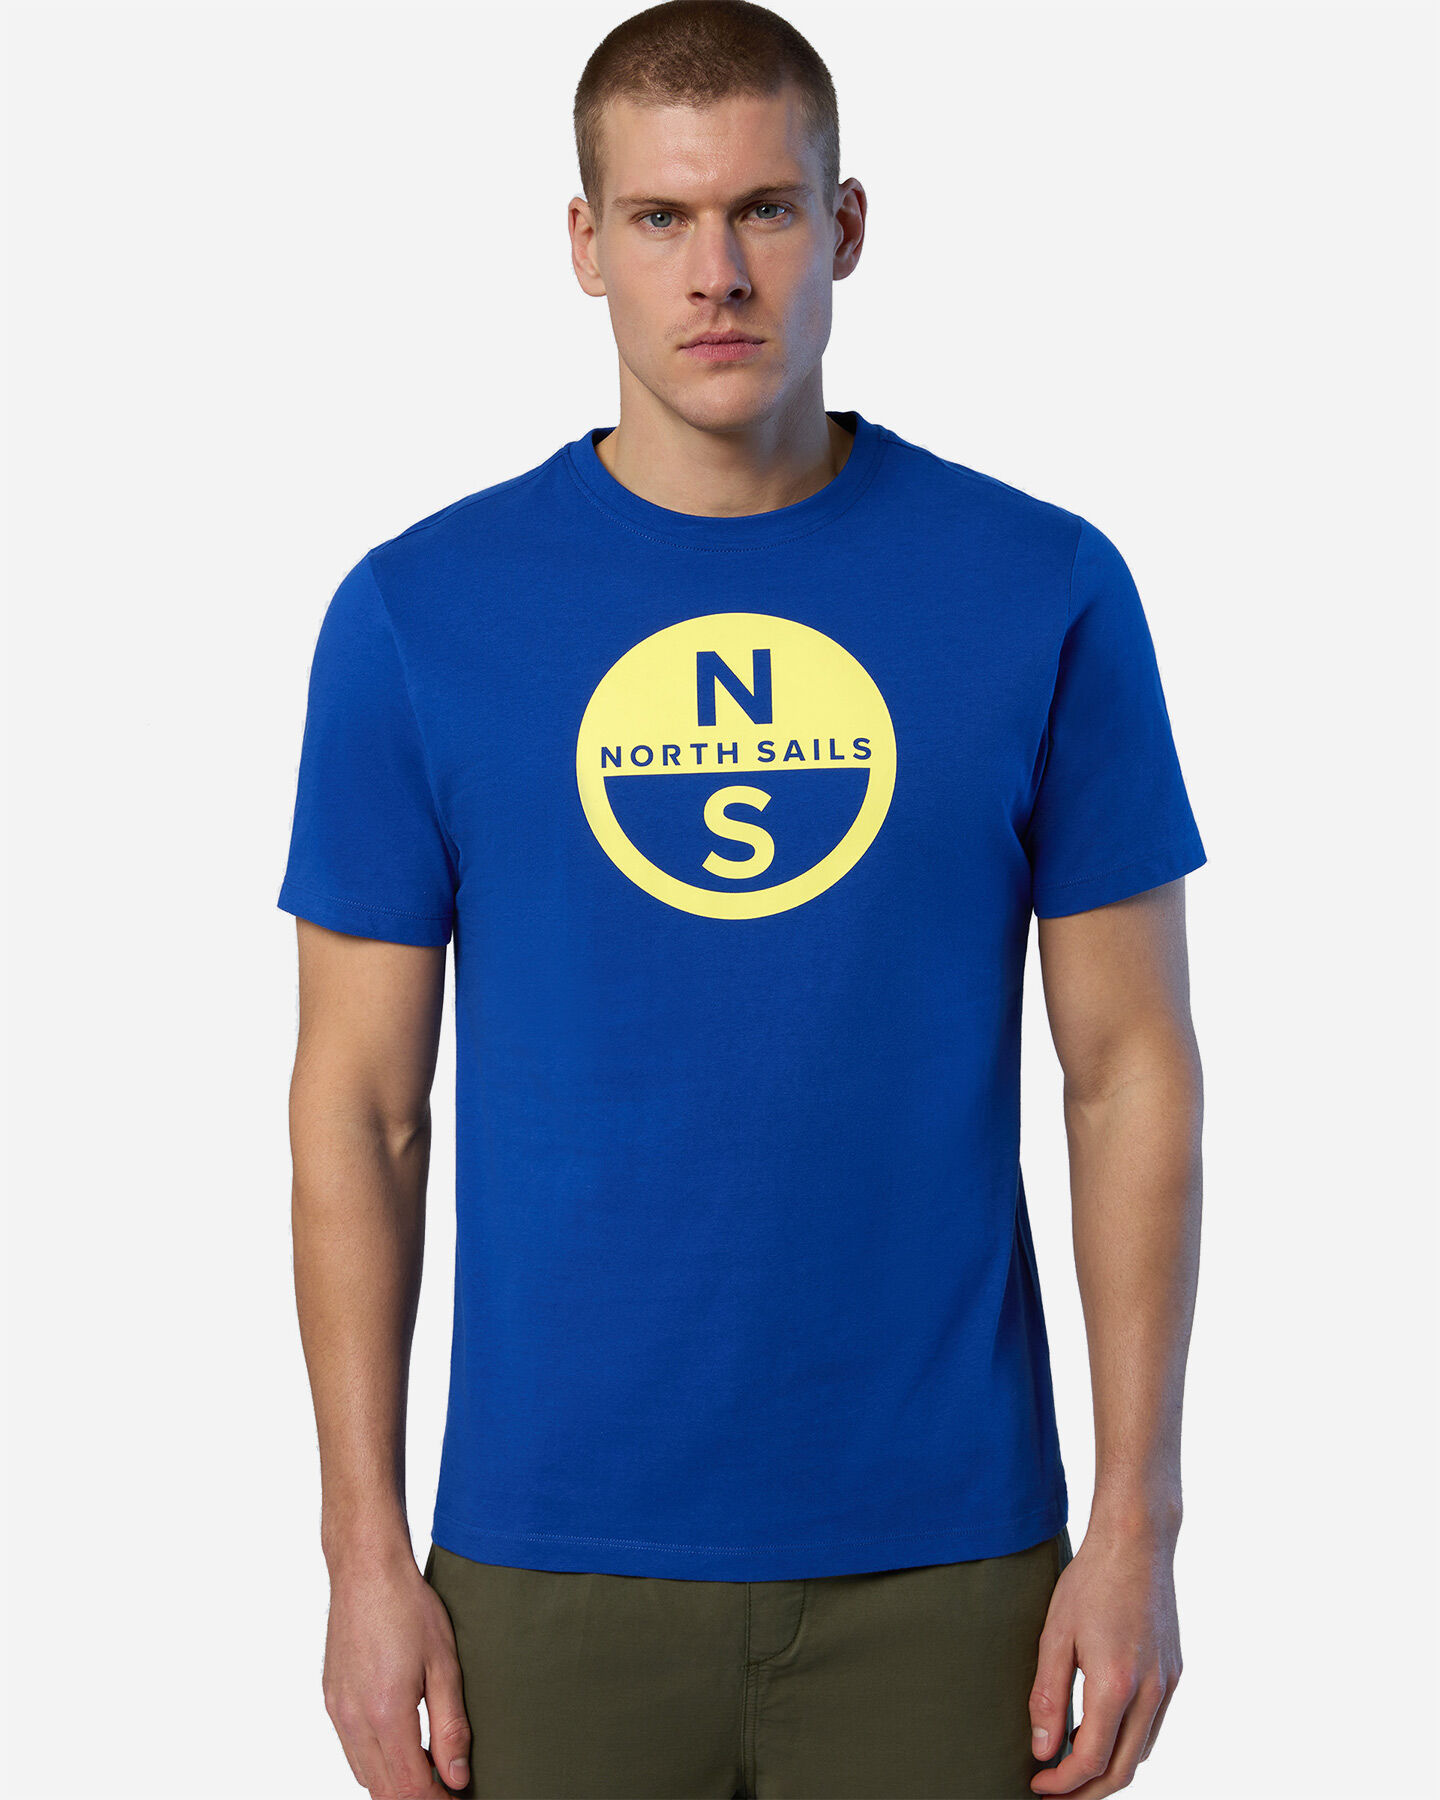  T-Shirt NORTH SAILS BOLLO M S5697985|0831|S scatto 1